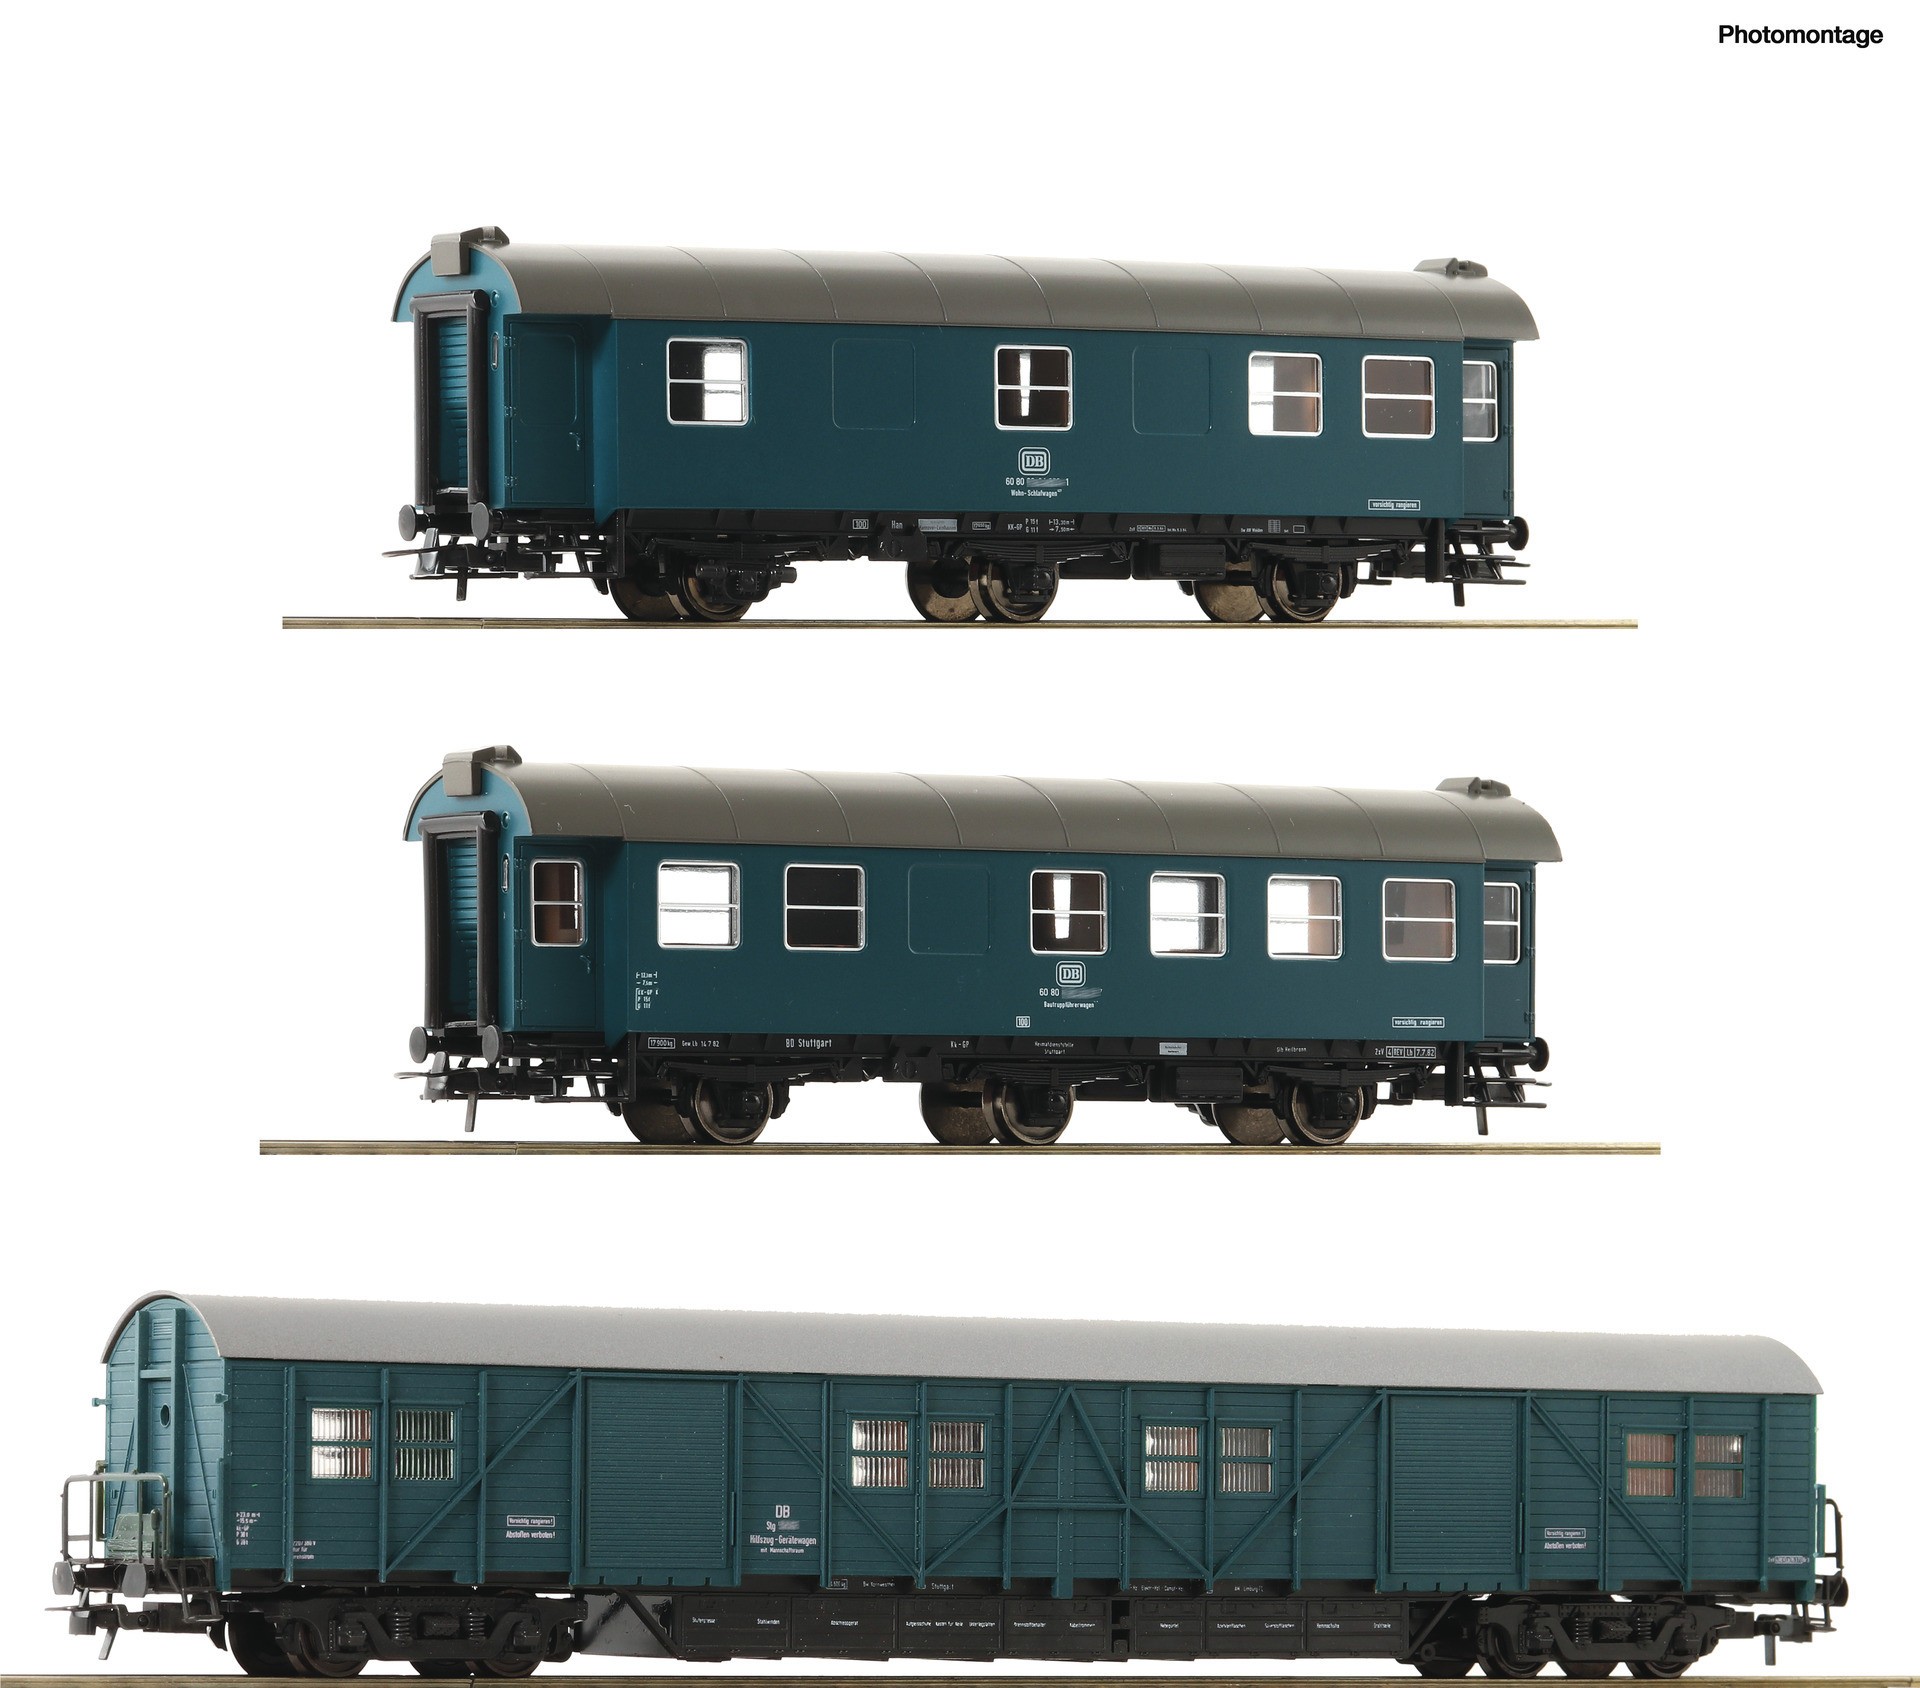  Roco-Fleischmann Roco-Fleischmann 67198-H0 - Trains miniatures : maté